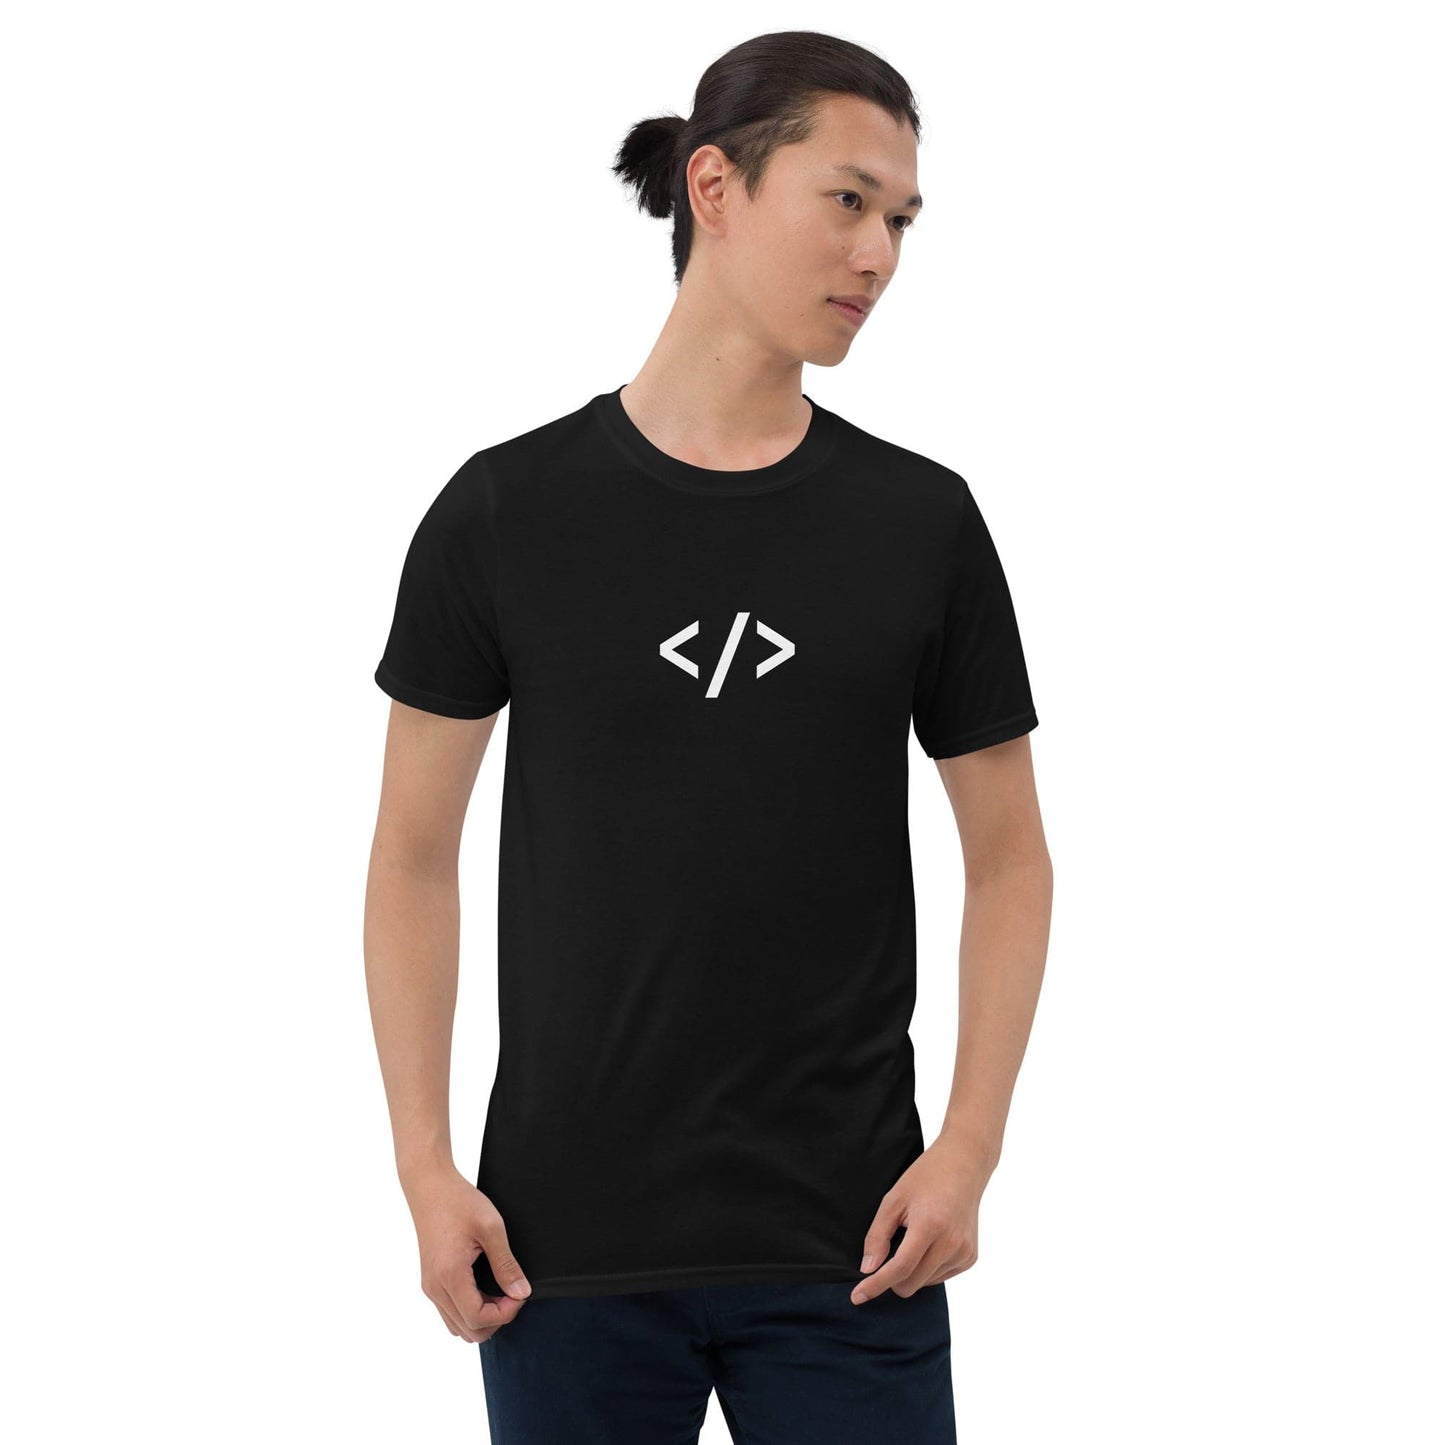 Autonomous Coder black unisex t-shirt